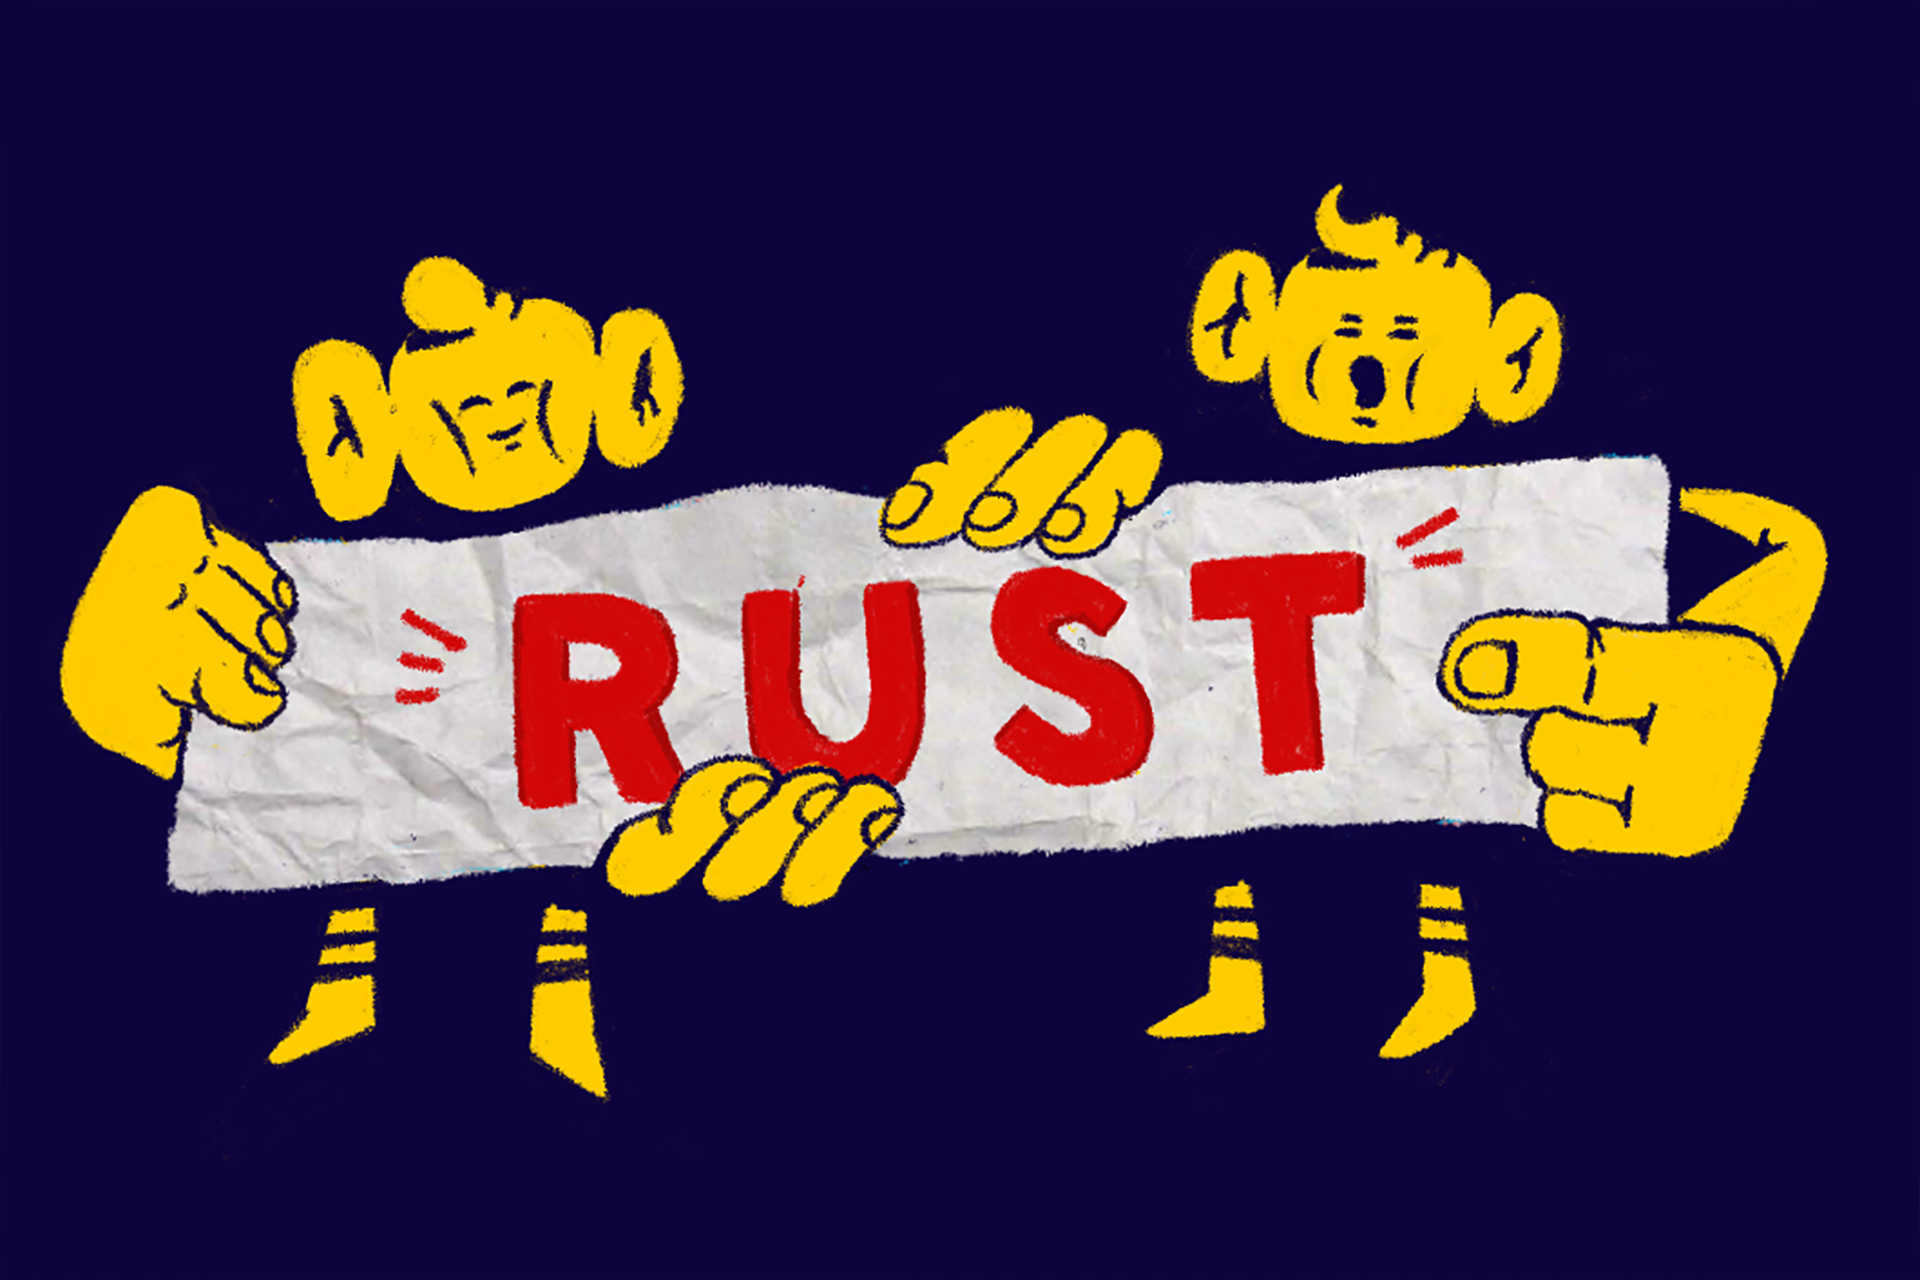 Придёт ли Rust на смену C и C++? 